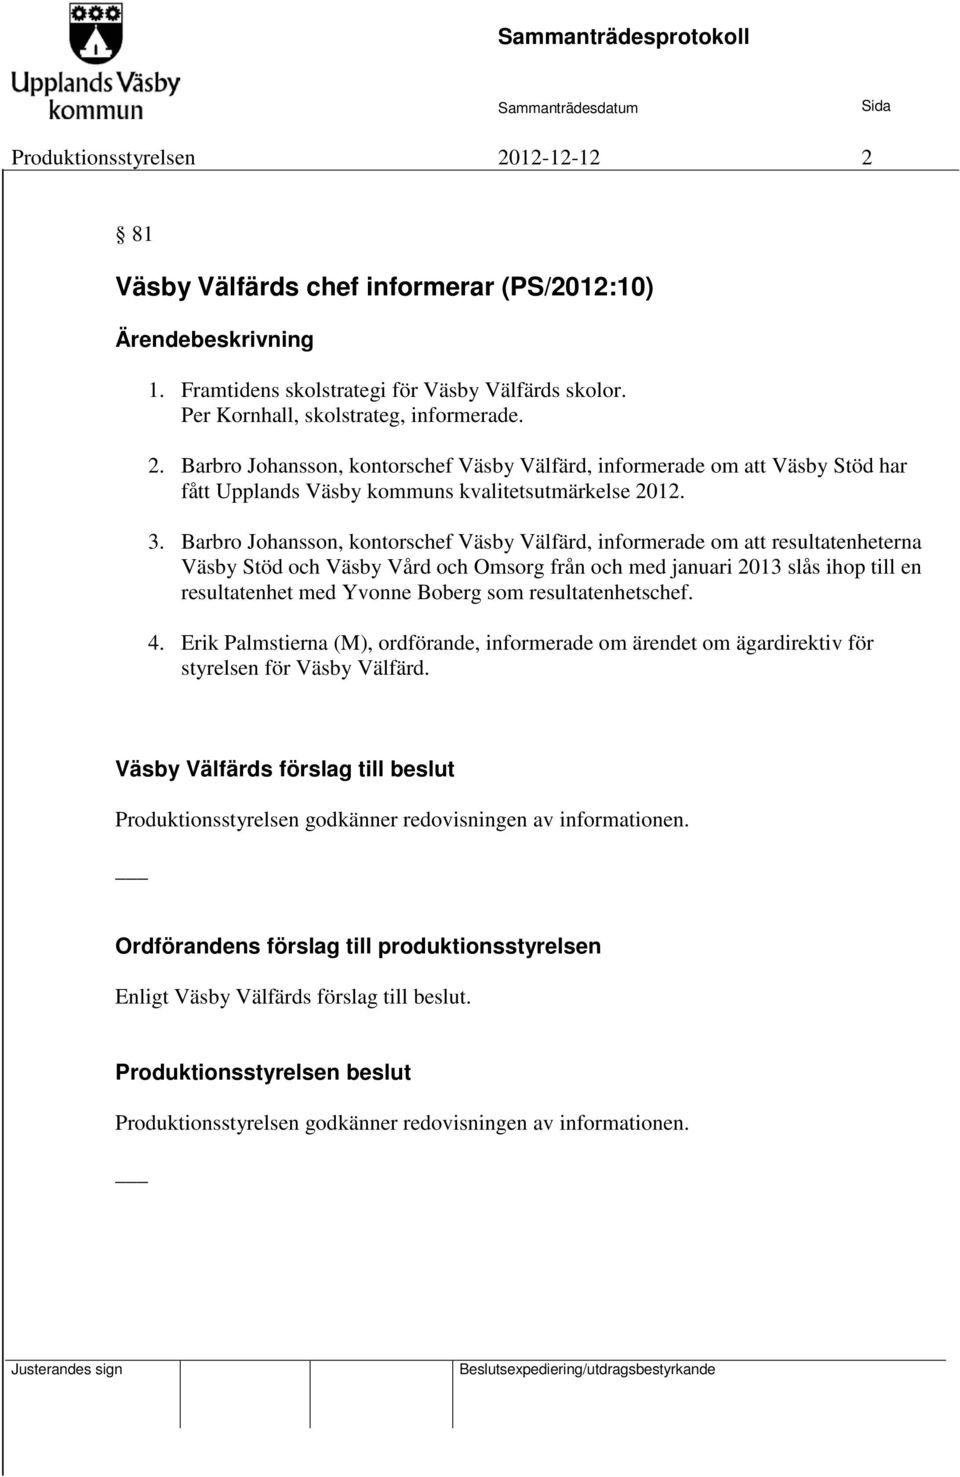 Yvonne Boberg som resultatenhetschef. 4. Erik Palmstierna (M), ordförande, informerade om ärendet om ägardirektiv för styrelsen för Väsby Välfärd.